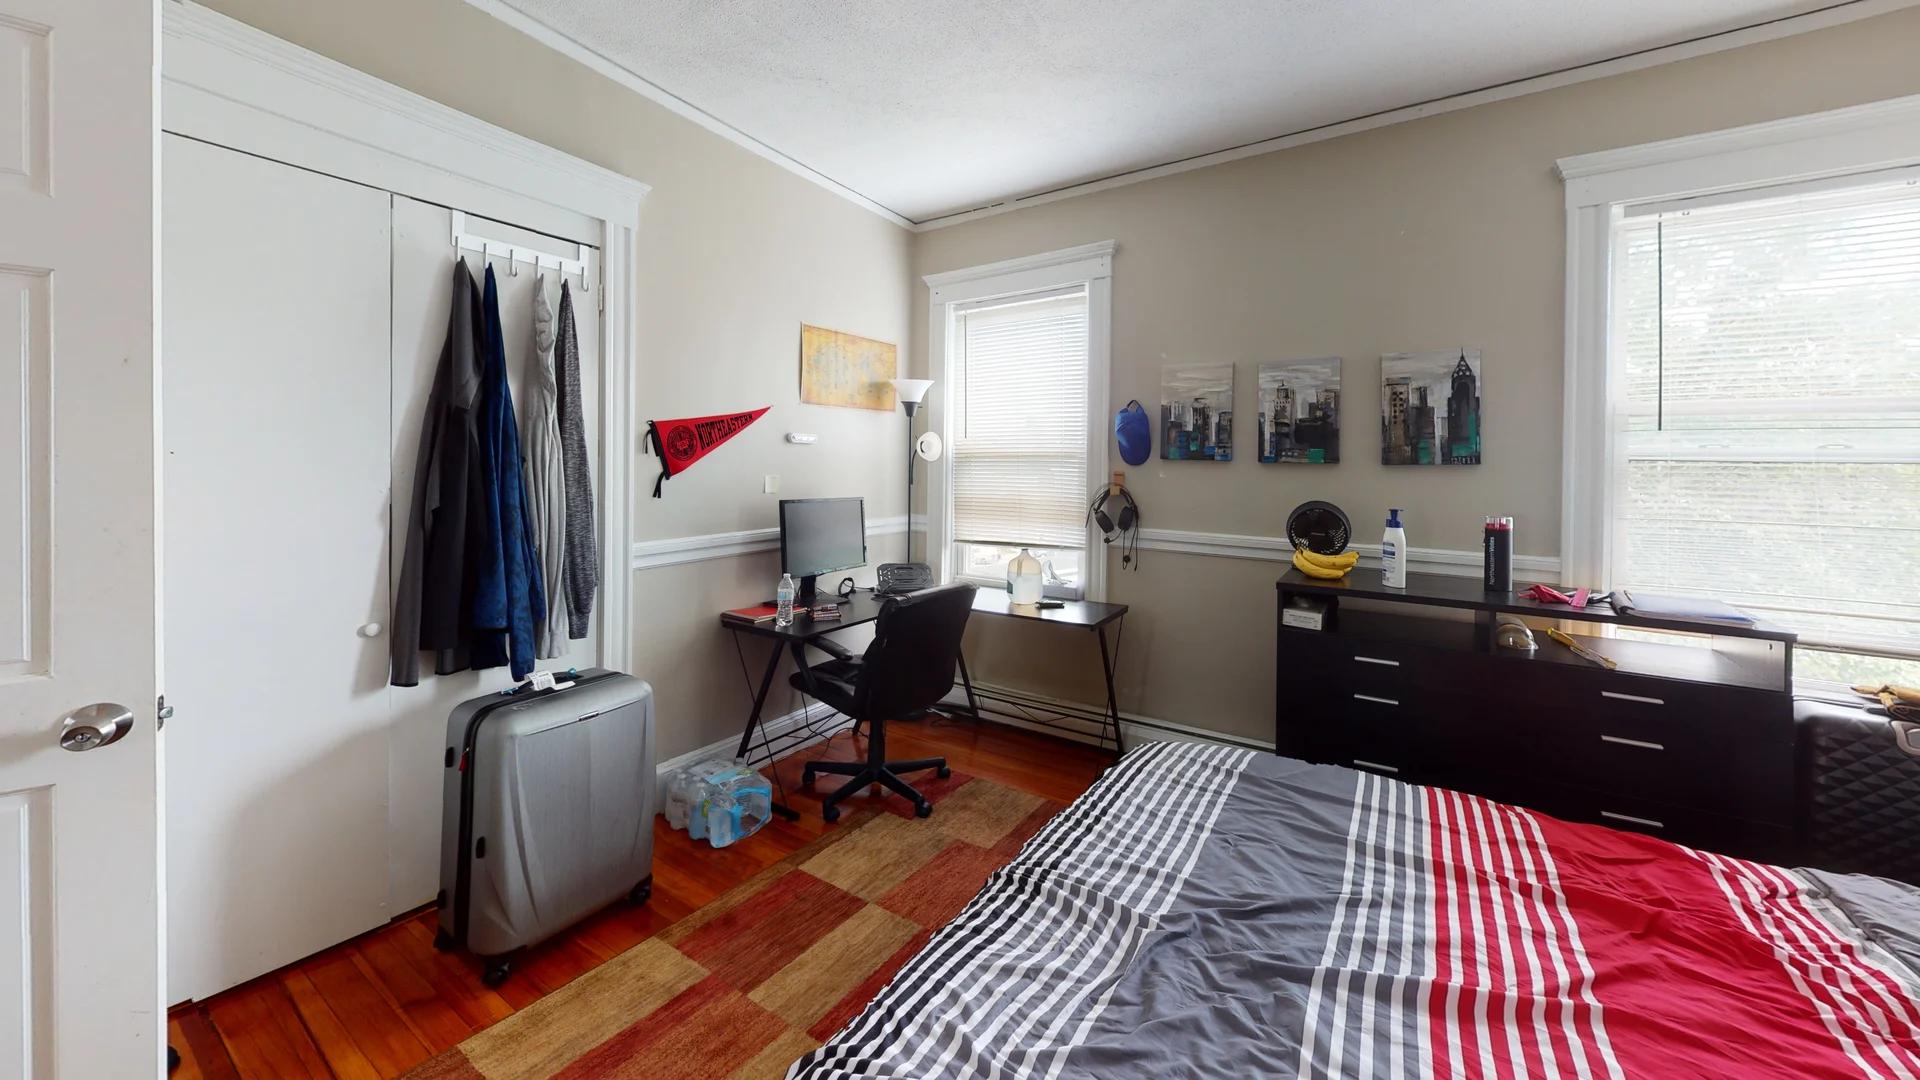 Photos of apartment on Estrella St.,Boston MA 02130